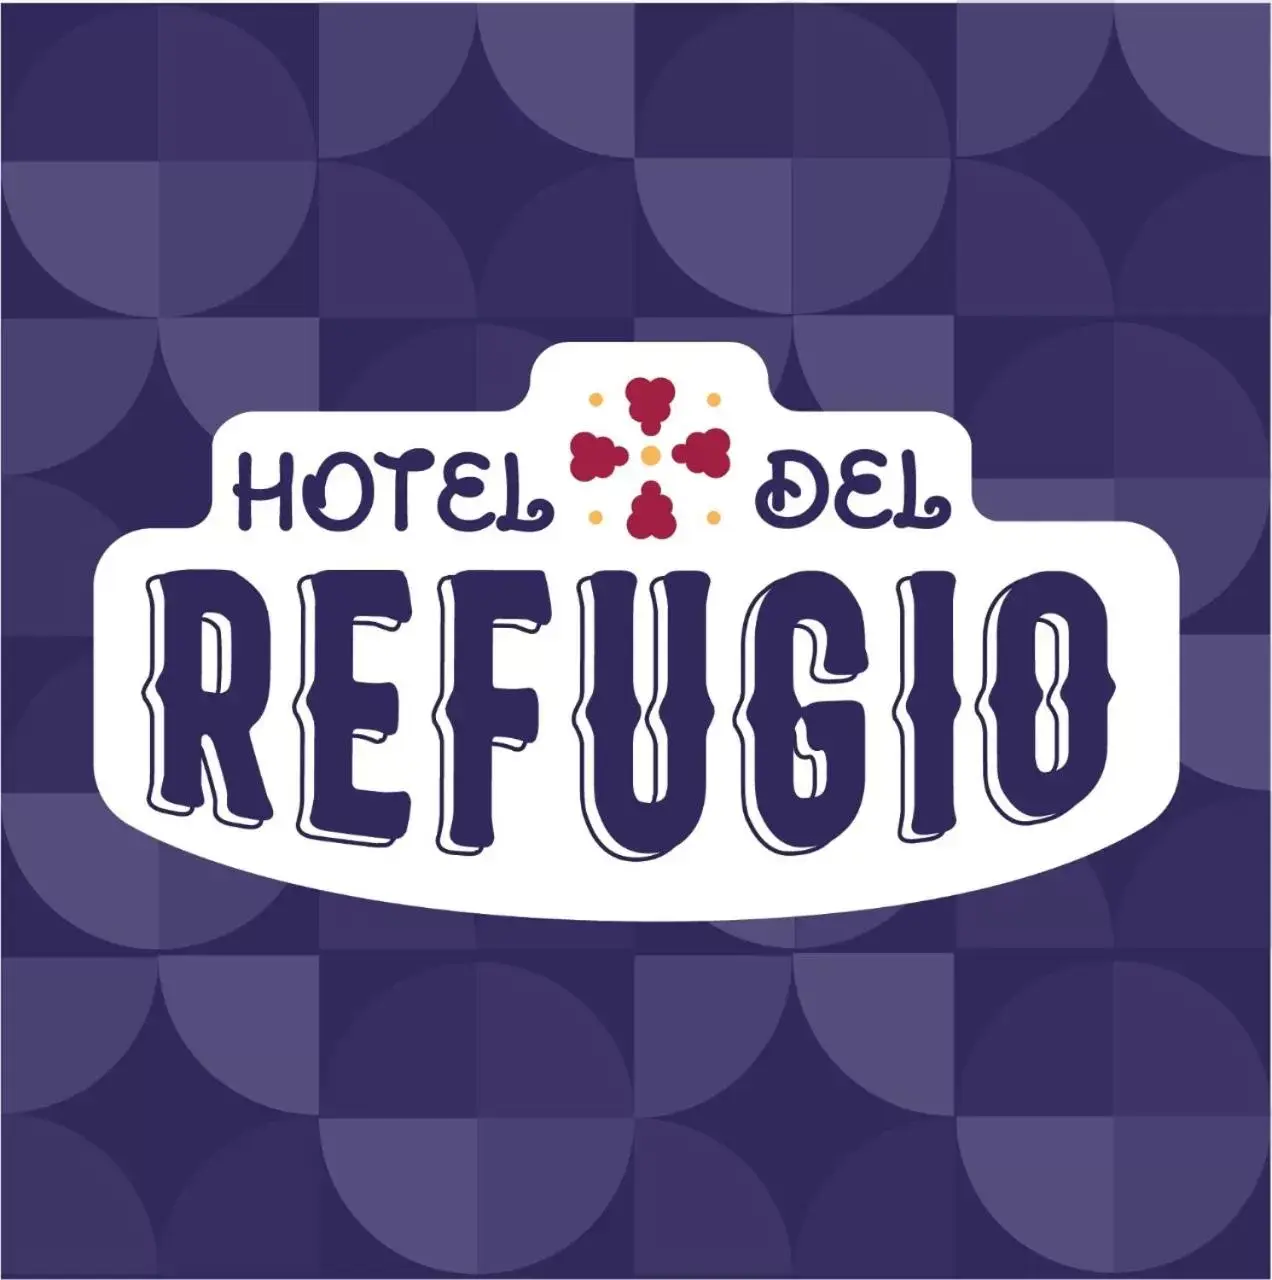 Logo/Certificate/Sign in Hotel del Refugio